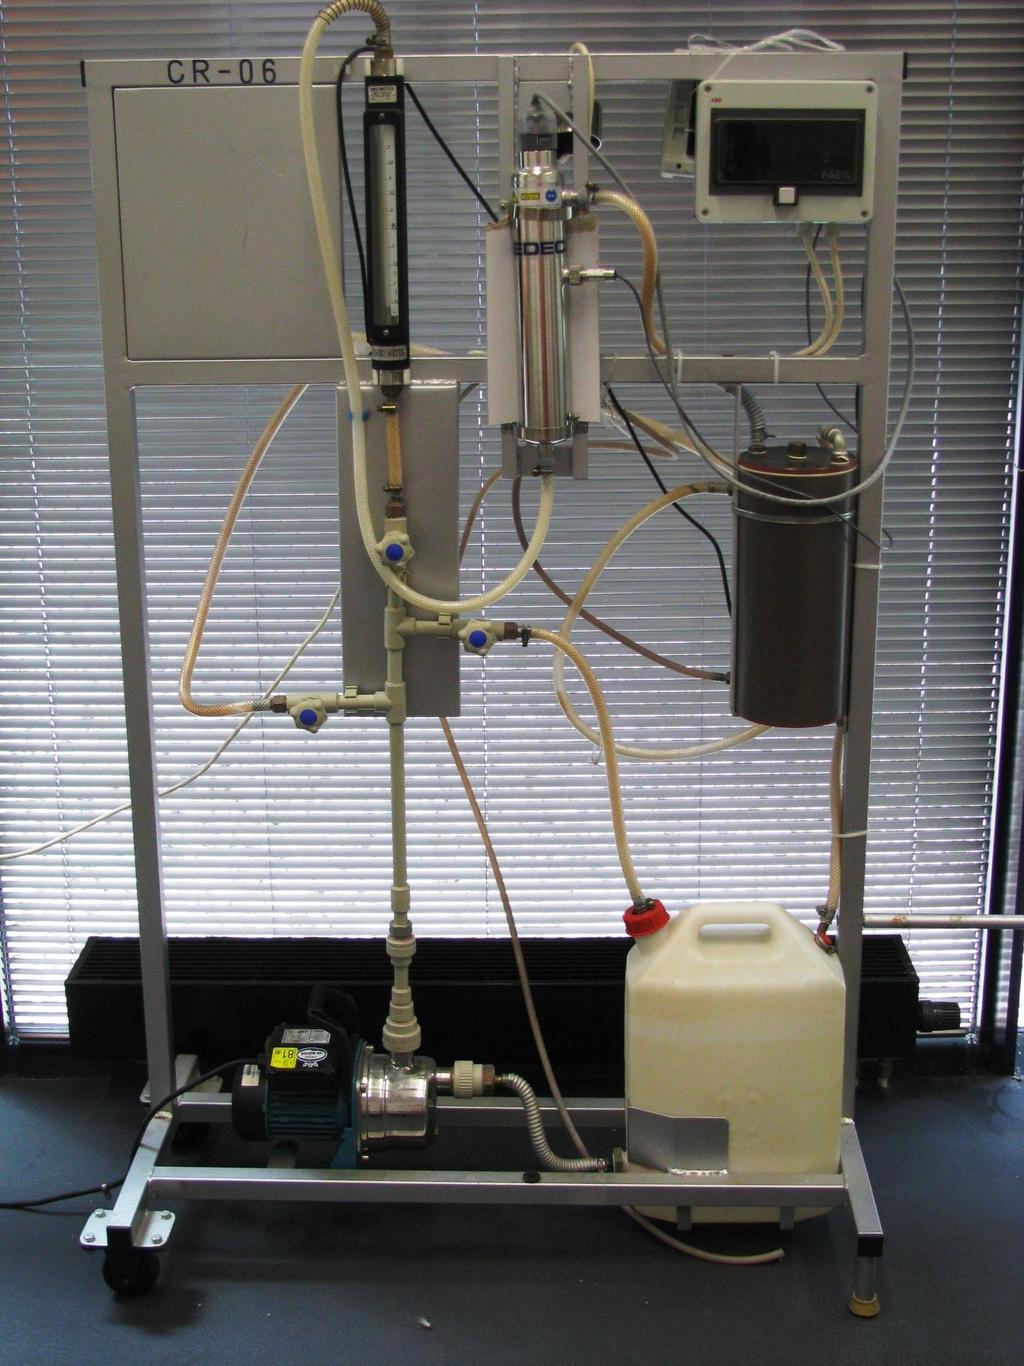 Obrázek 5 Laboratorní zařízení s UV lampou pro